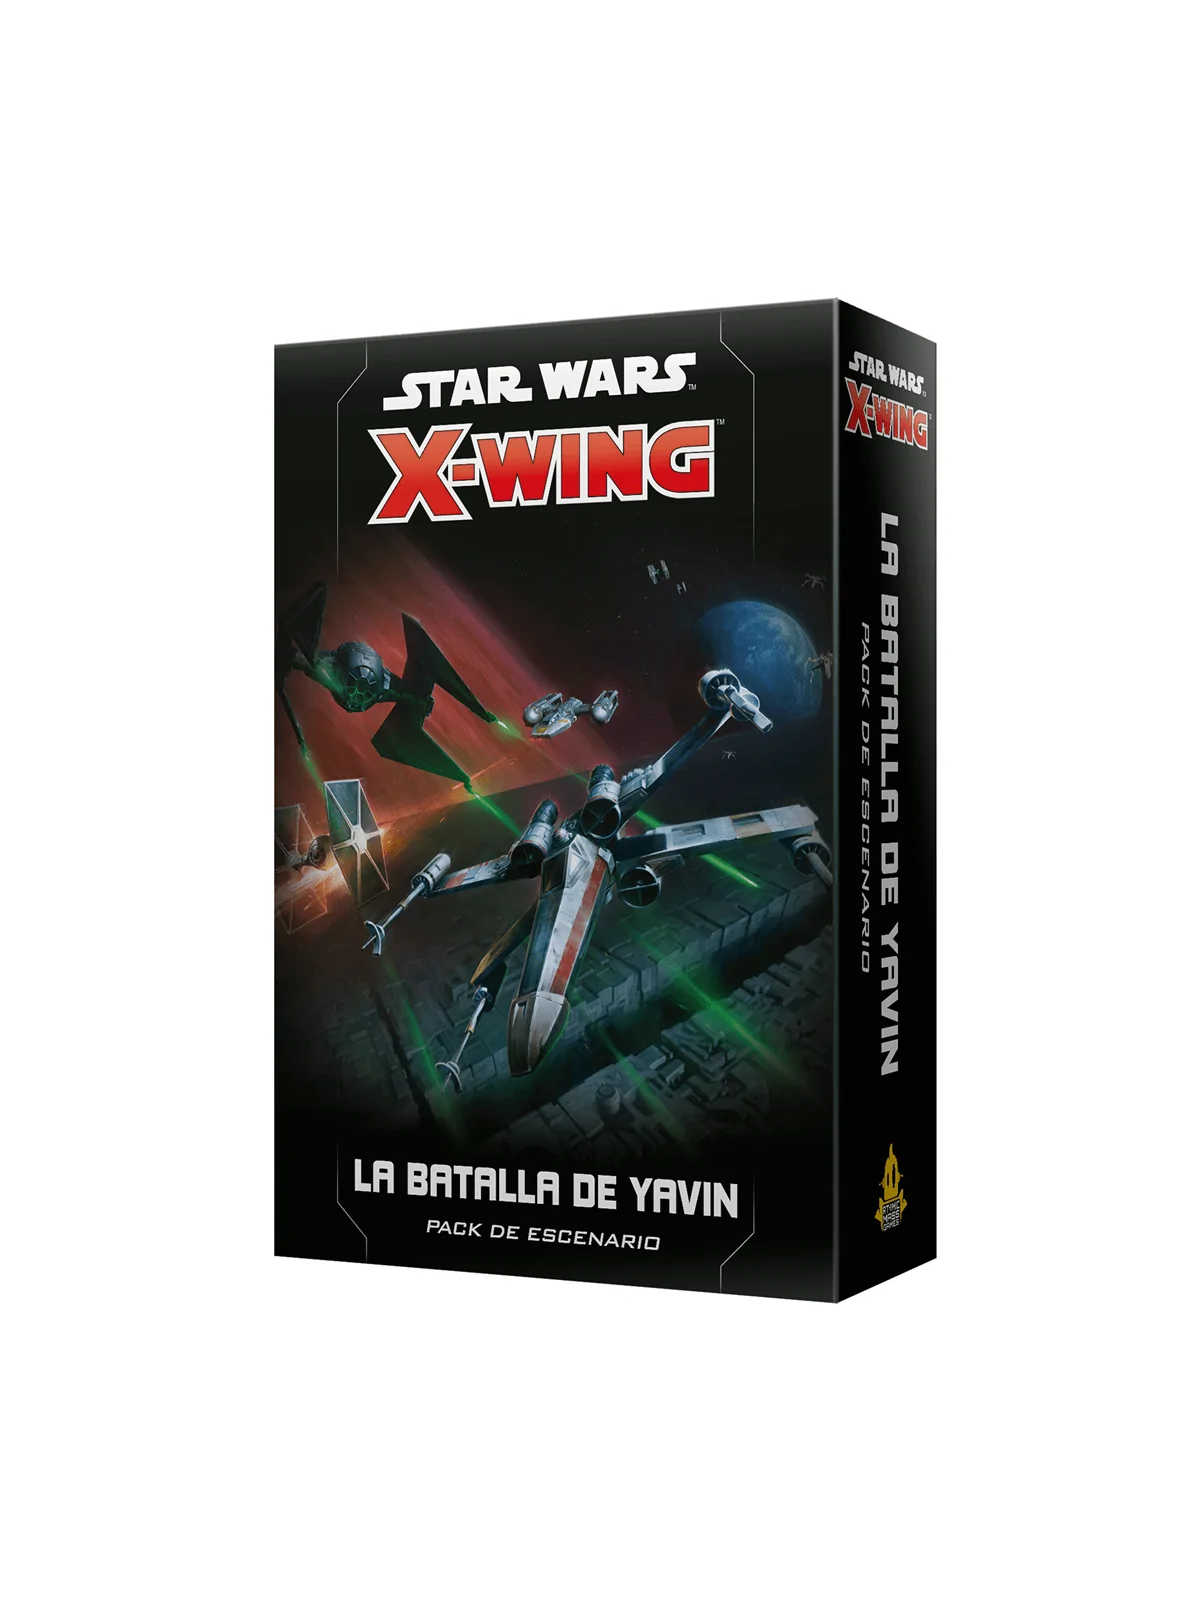 Comprar SW X-Wing: Batalla de Yavin barato al mejor precio 22,49 € de 